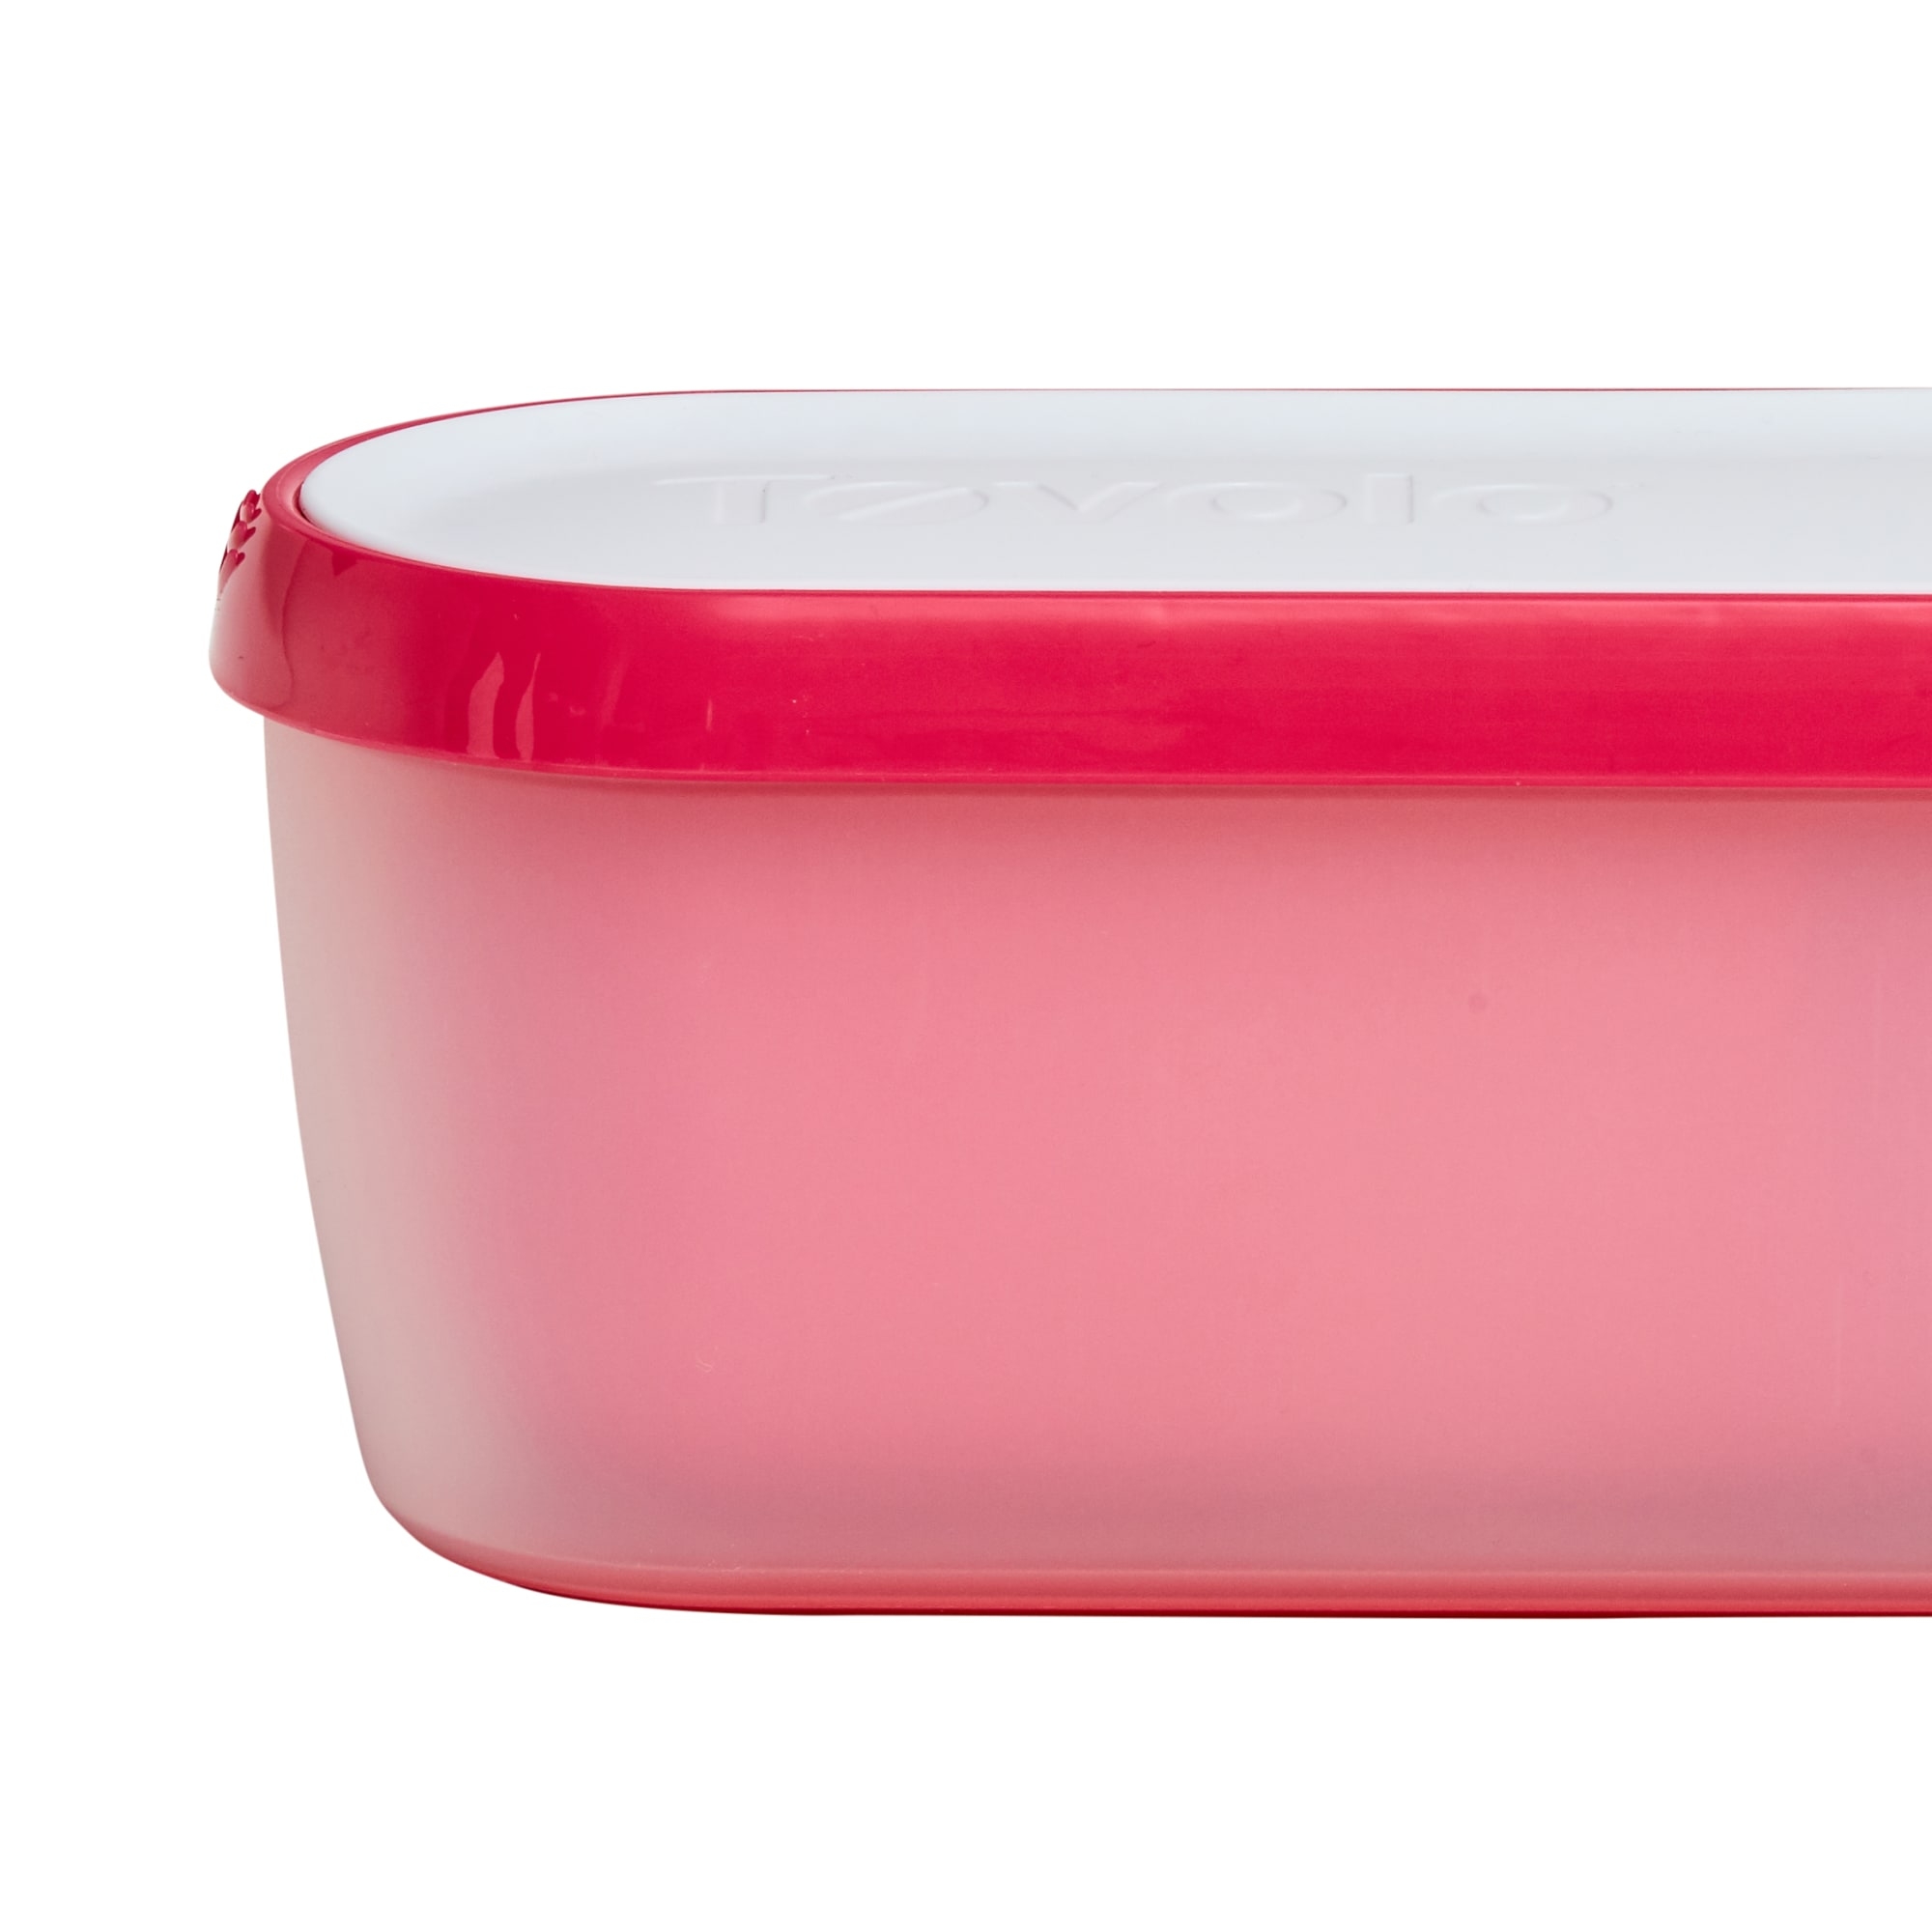 Tovolo Glide-A-Scoop Ice Cream Tub 1.4L Strawberry Image 2